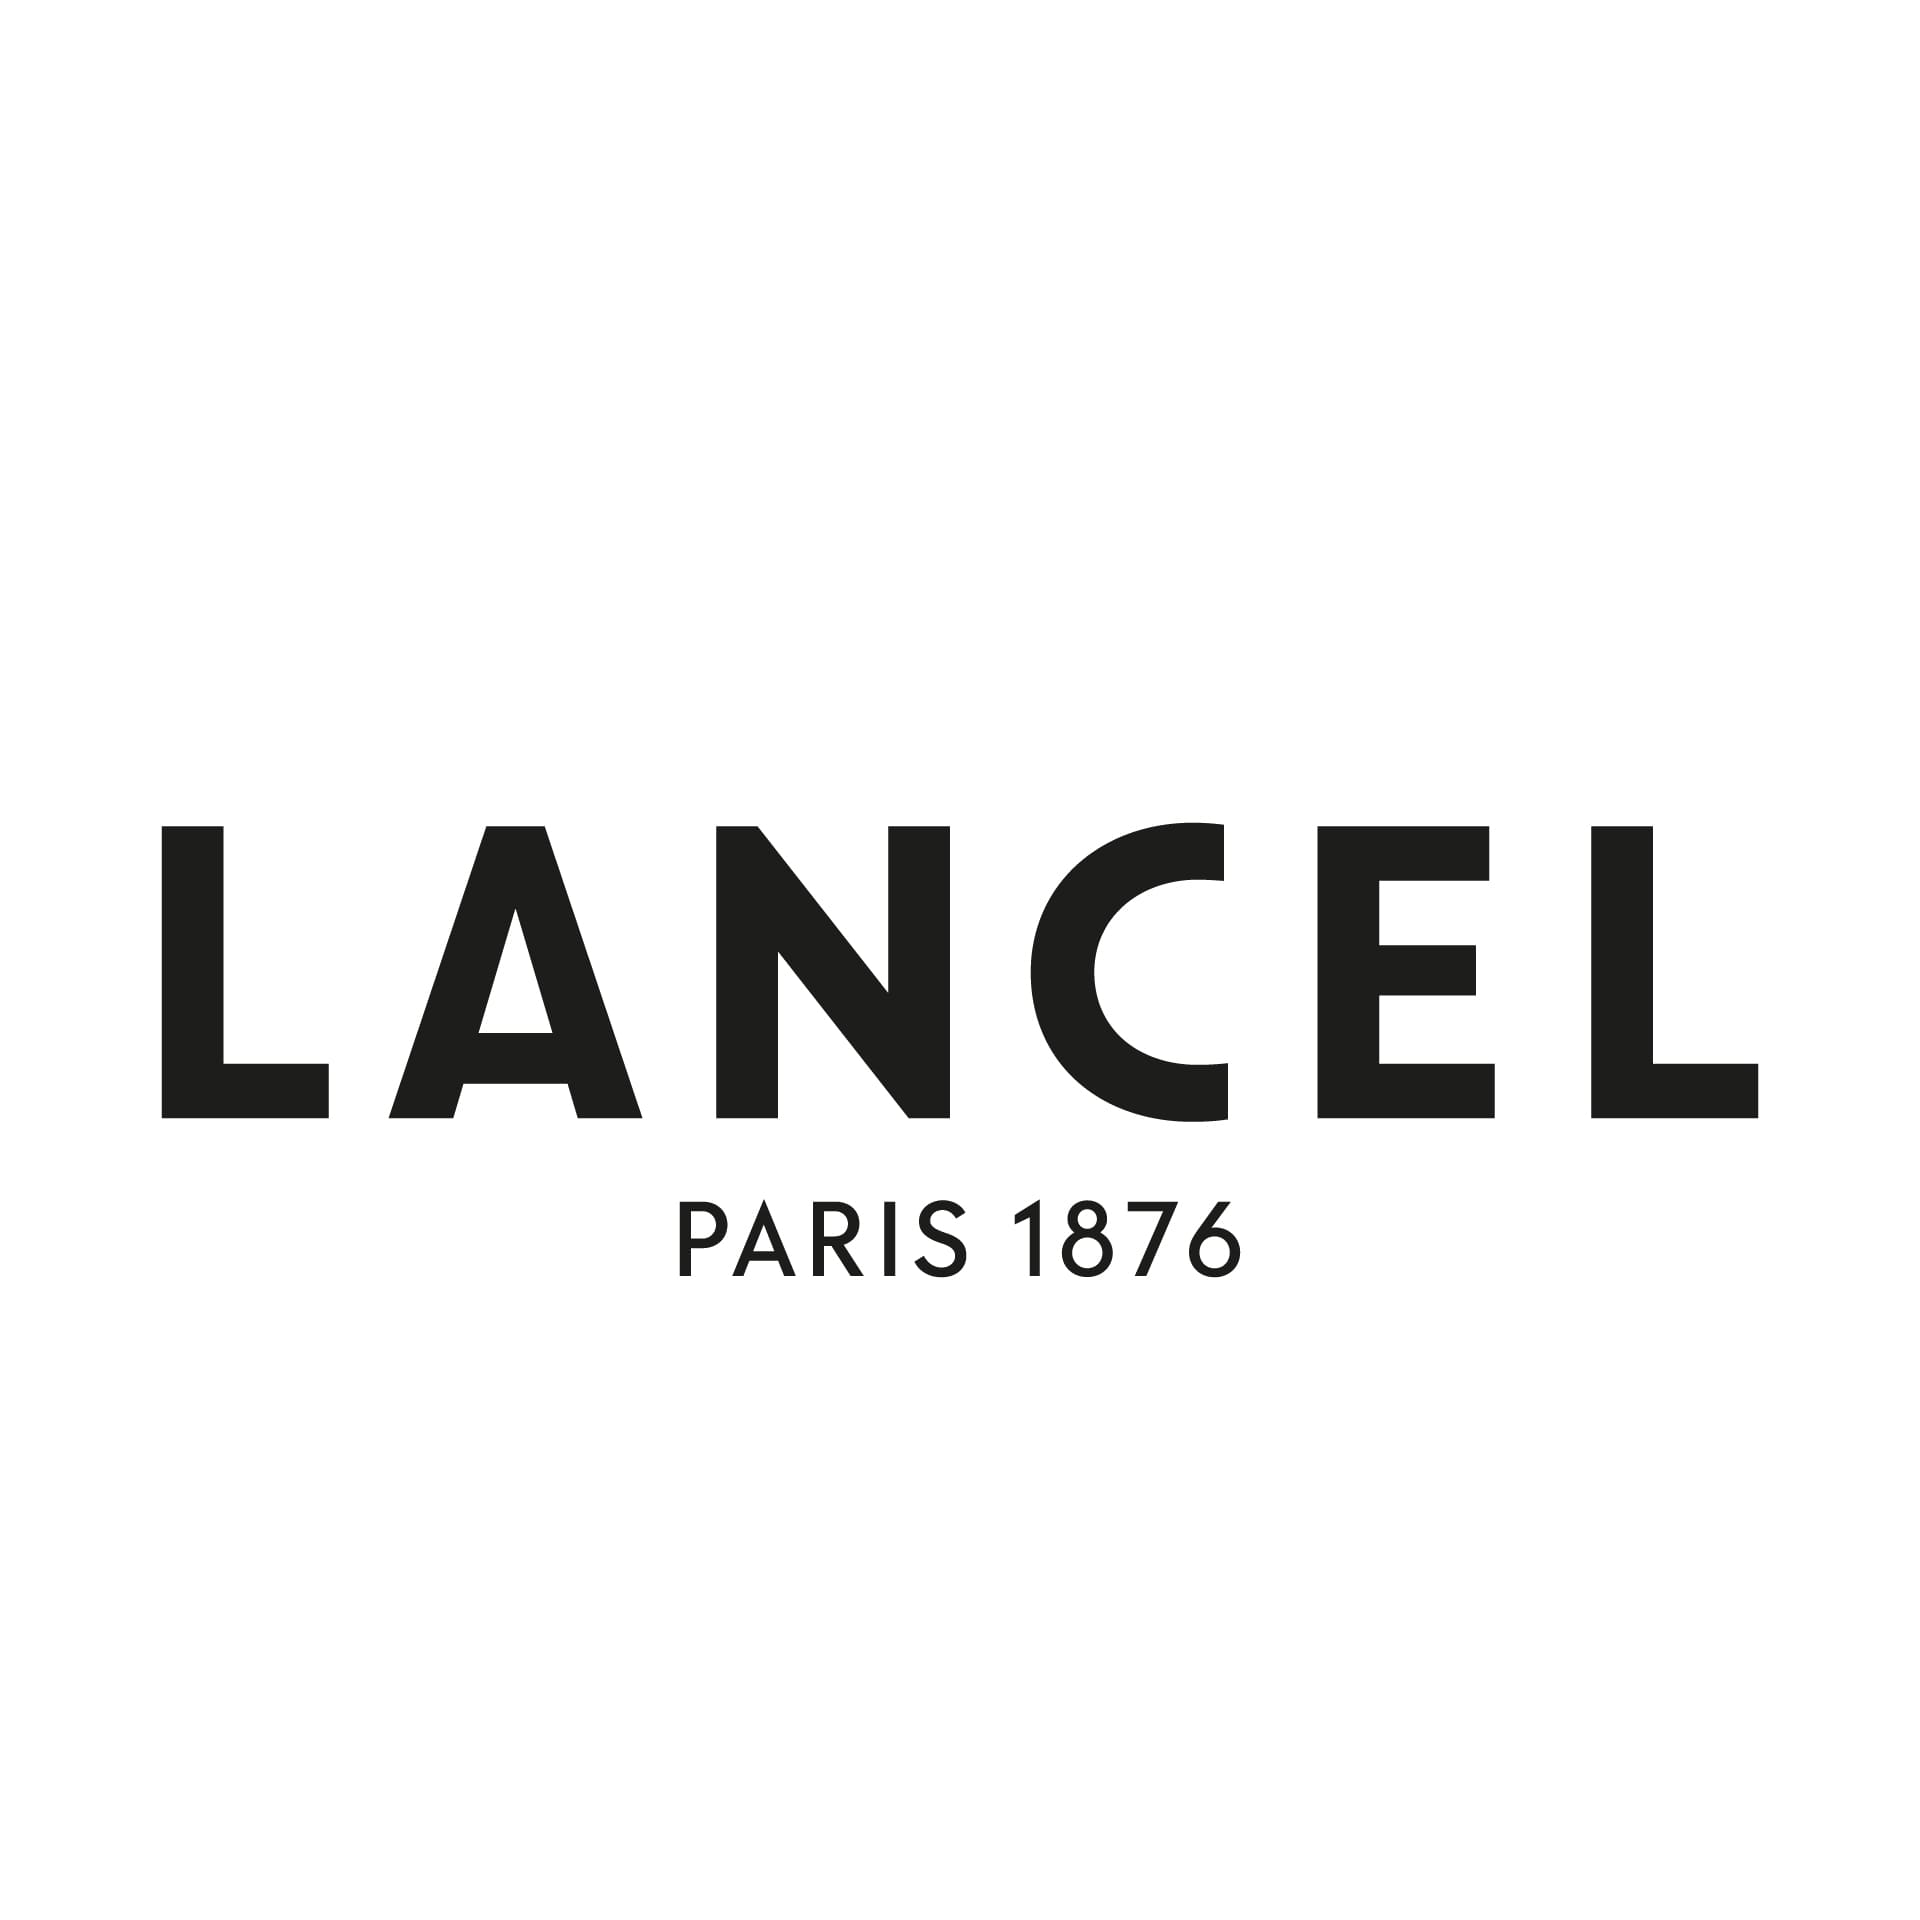 Lancel